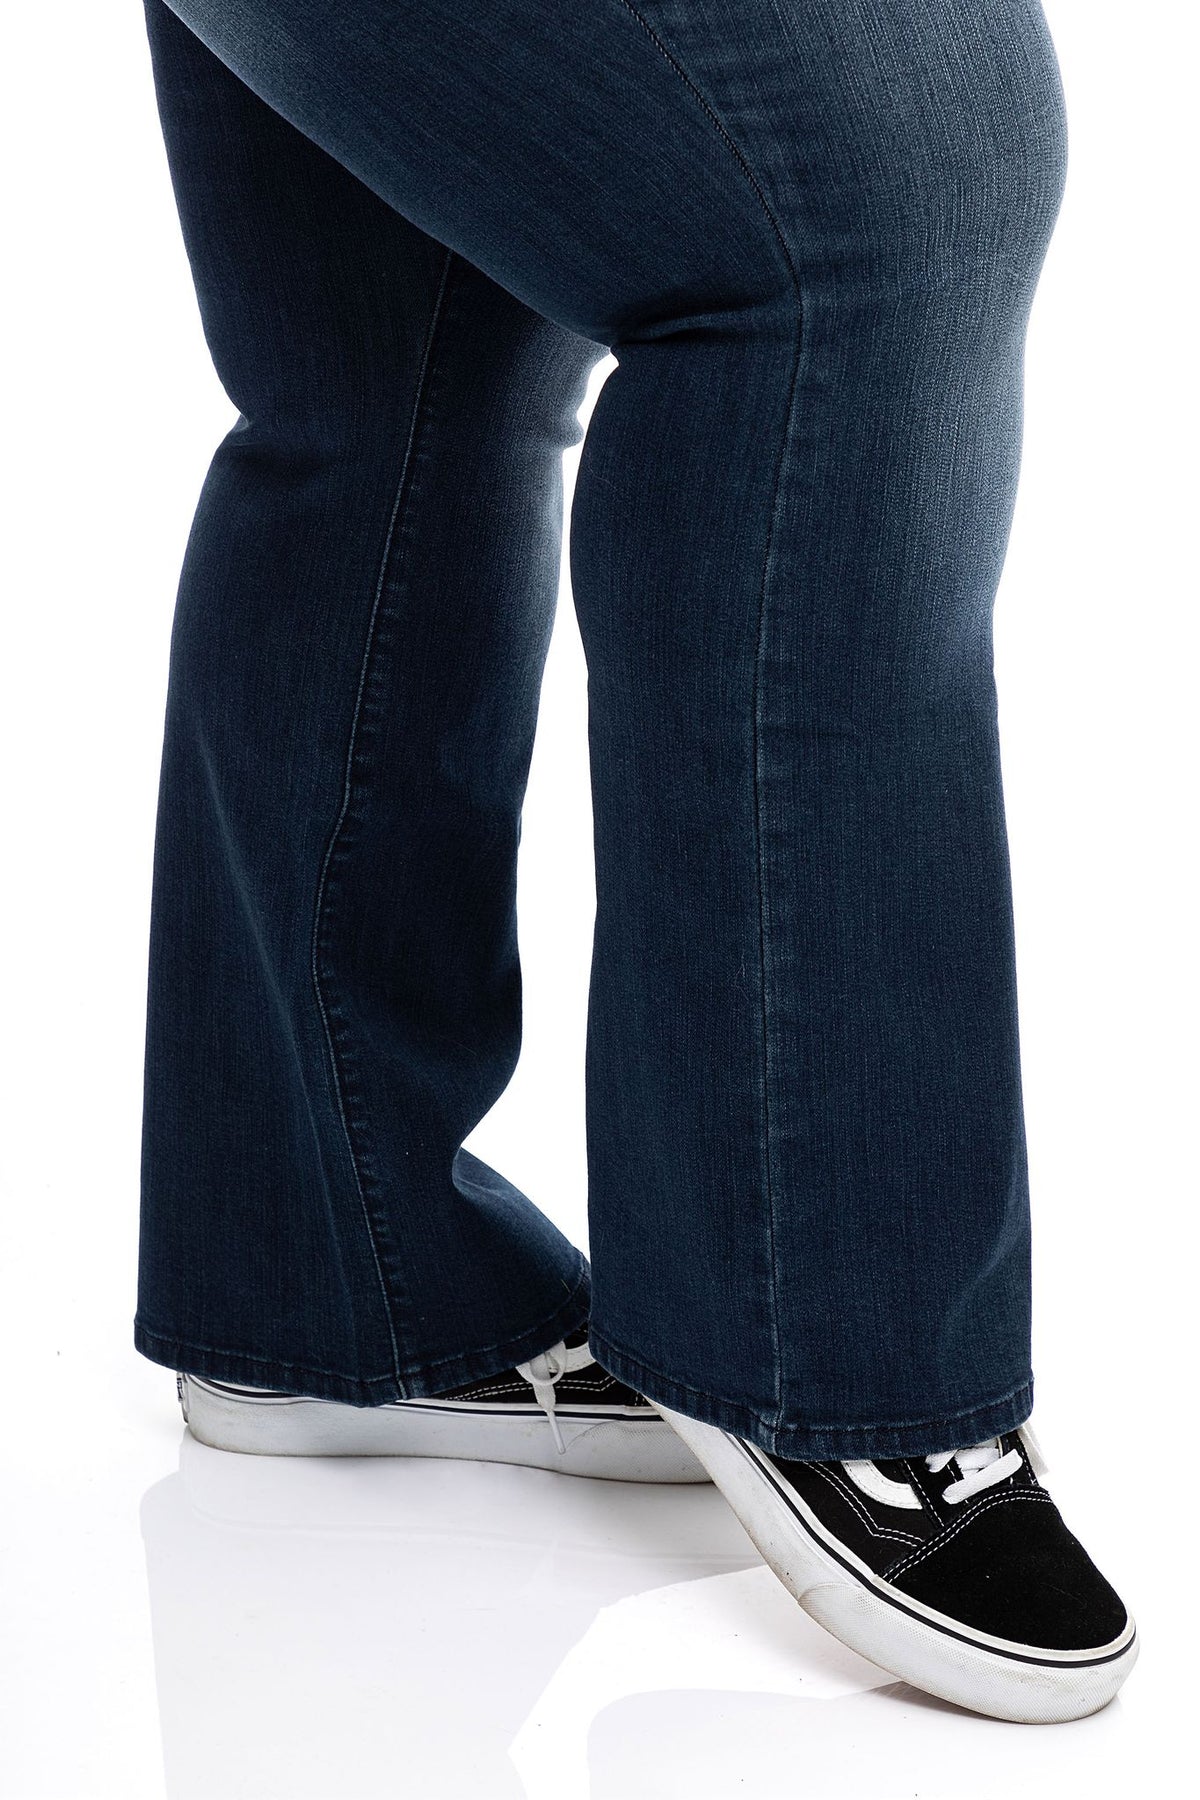 1822 Denim Men's Straight Leg Jeans